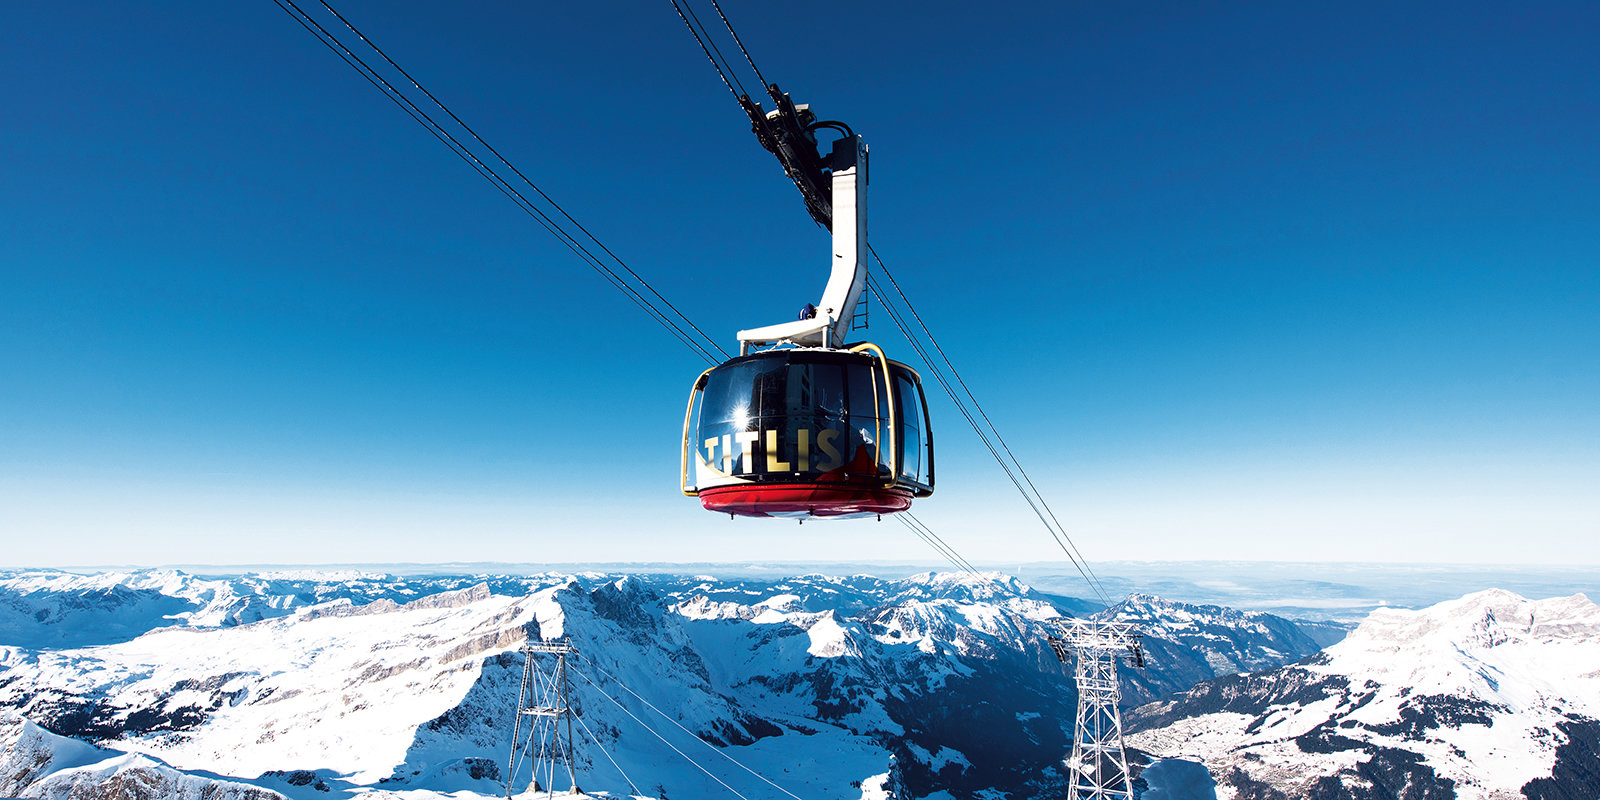 A világ első forgó felvonója körpanorámával a svájci Titlis síterepén | Fotó: doppelmayr.com